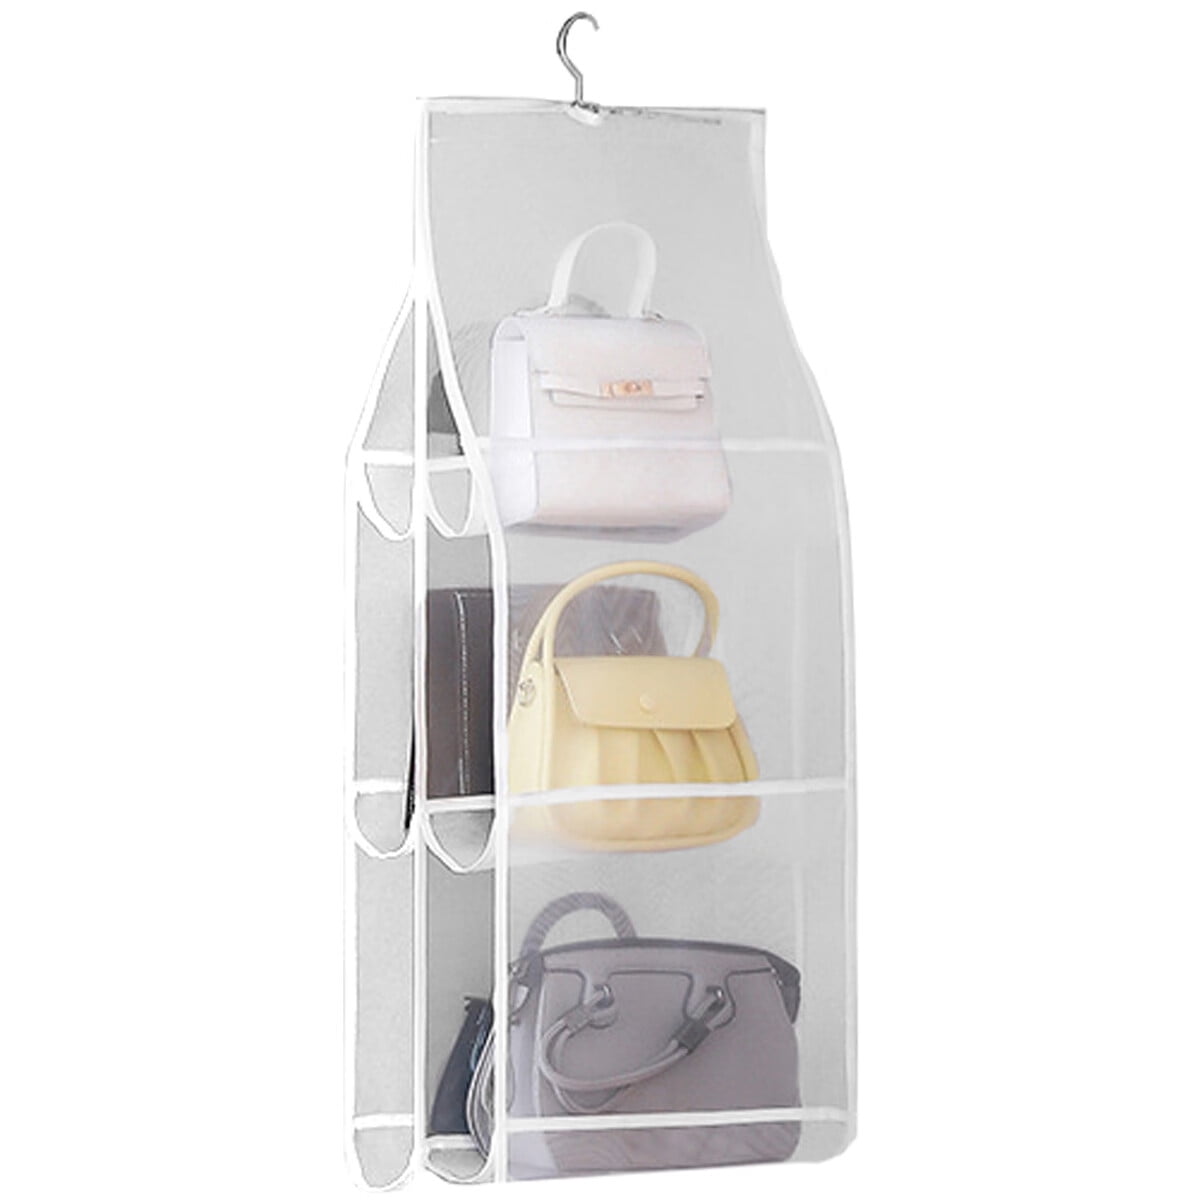 Handbag Organizer Closet Hanging Handbag Purse Organizer Purse Bags Holder  with Pockets - Walmart.com